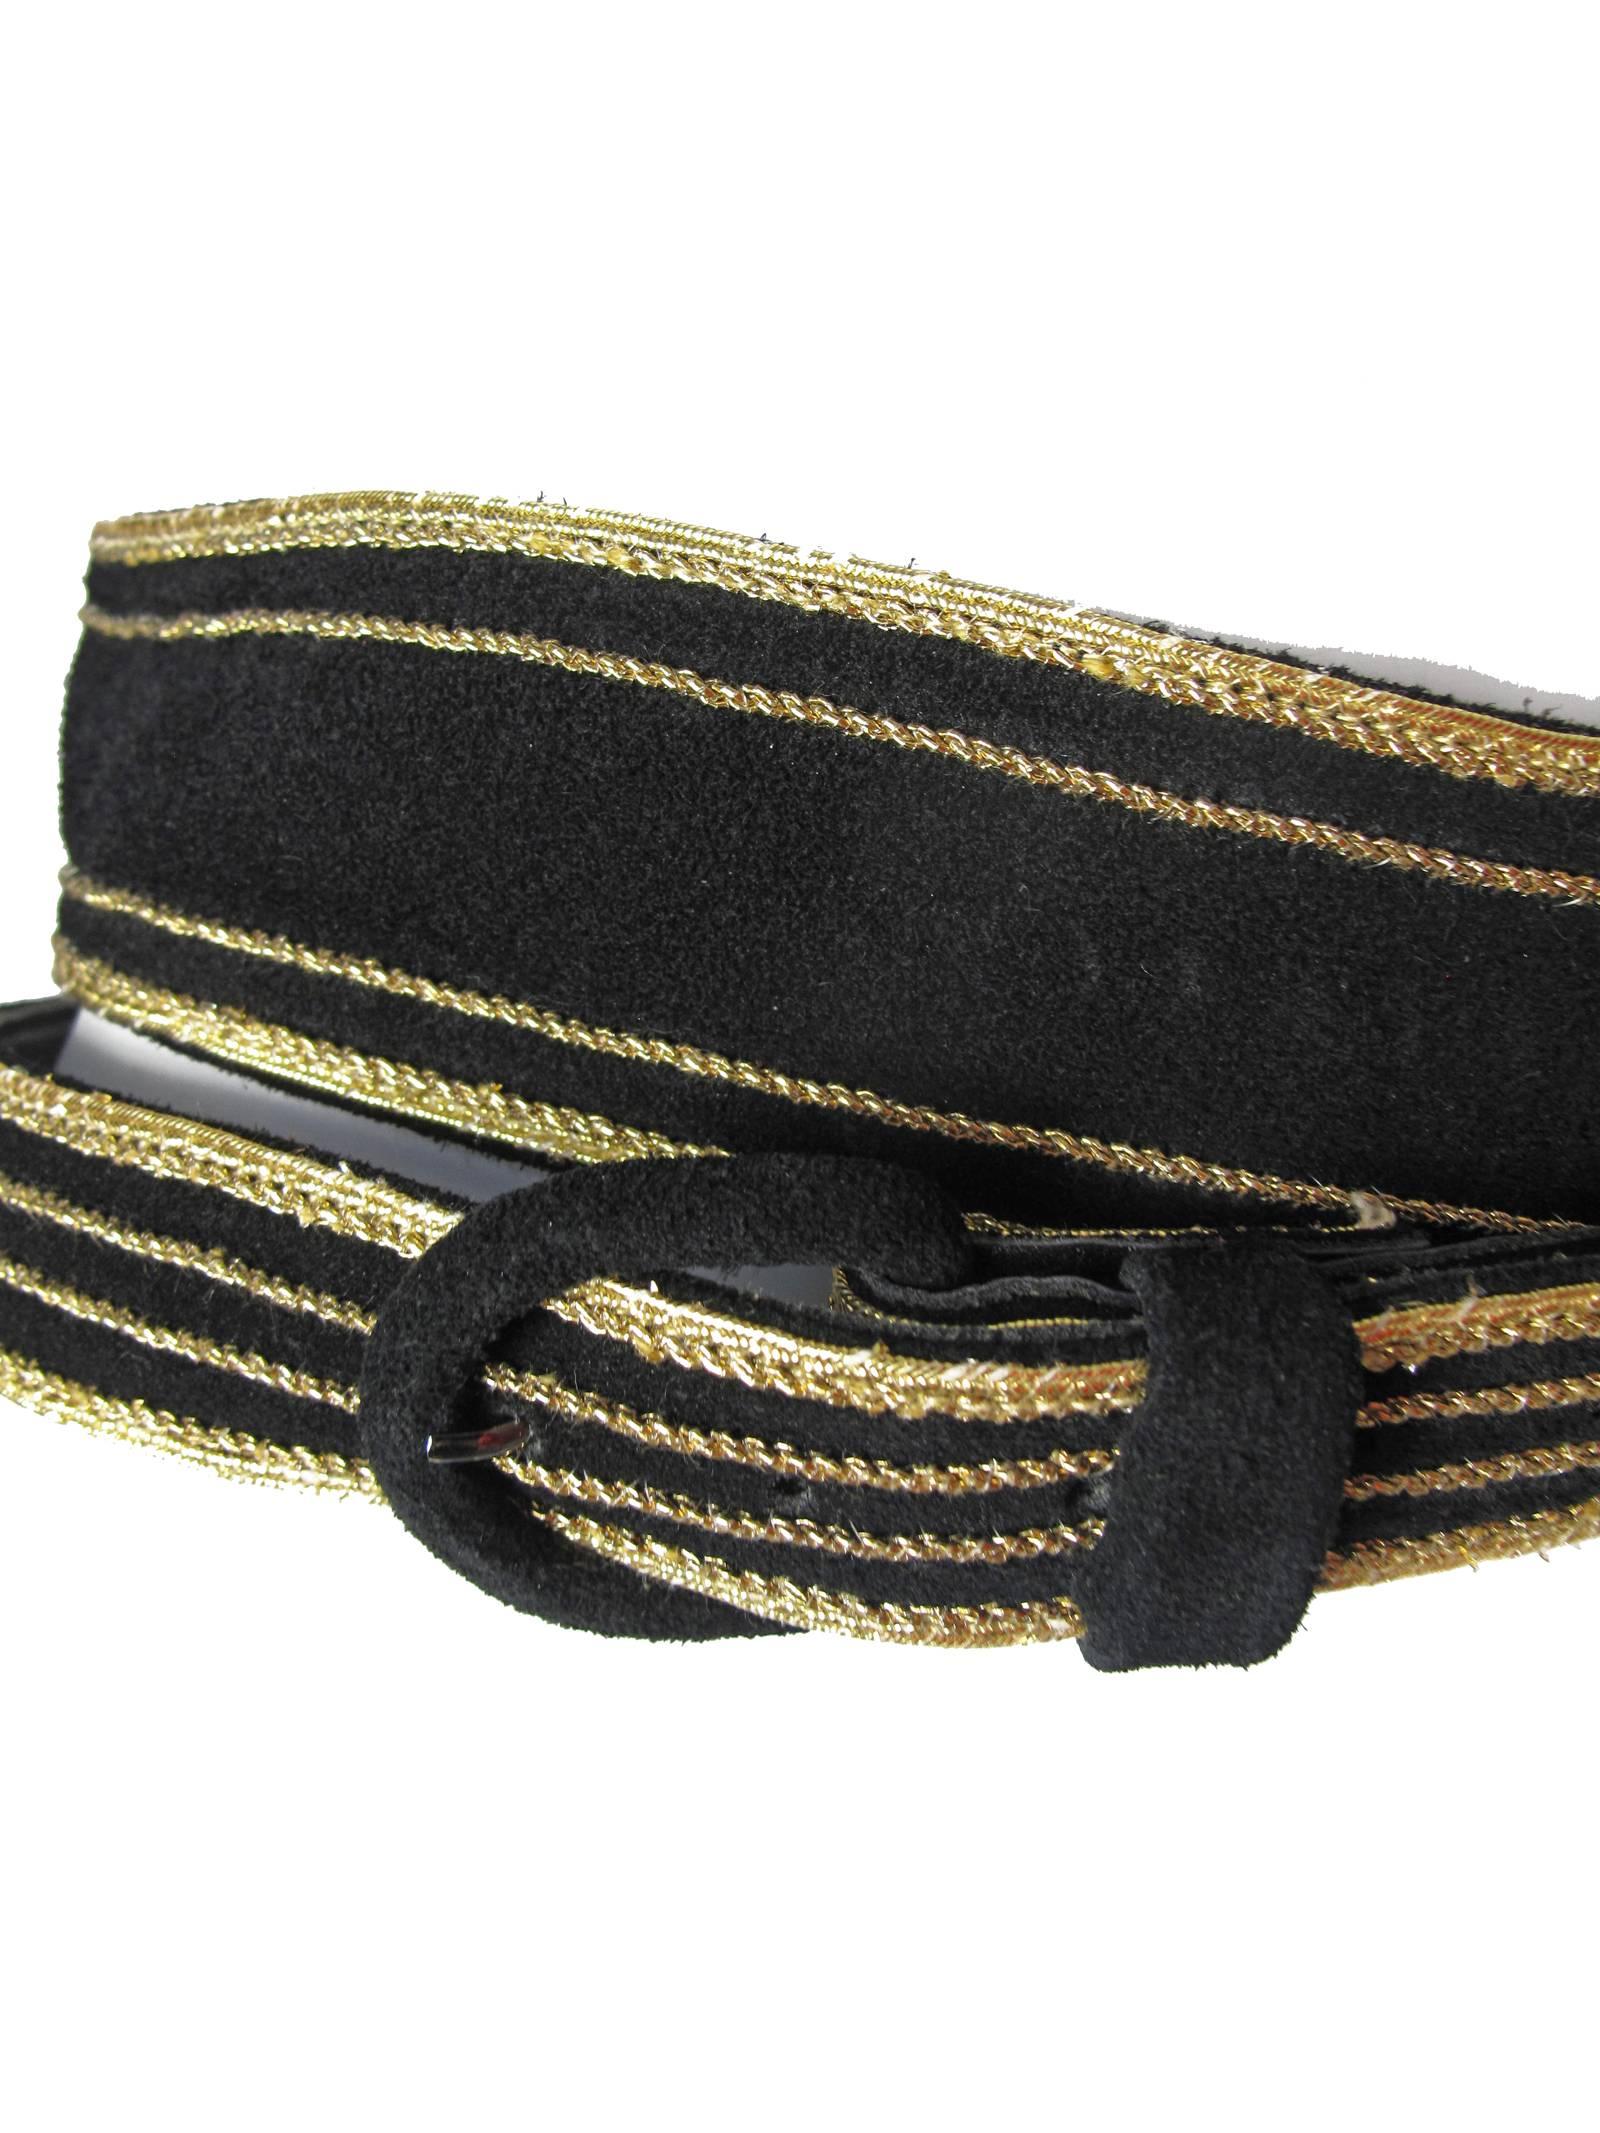 Black Yves Saint Laurent Suede Double Wrap Waist Belt